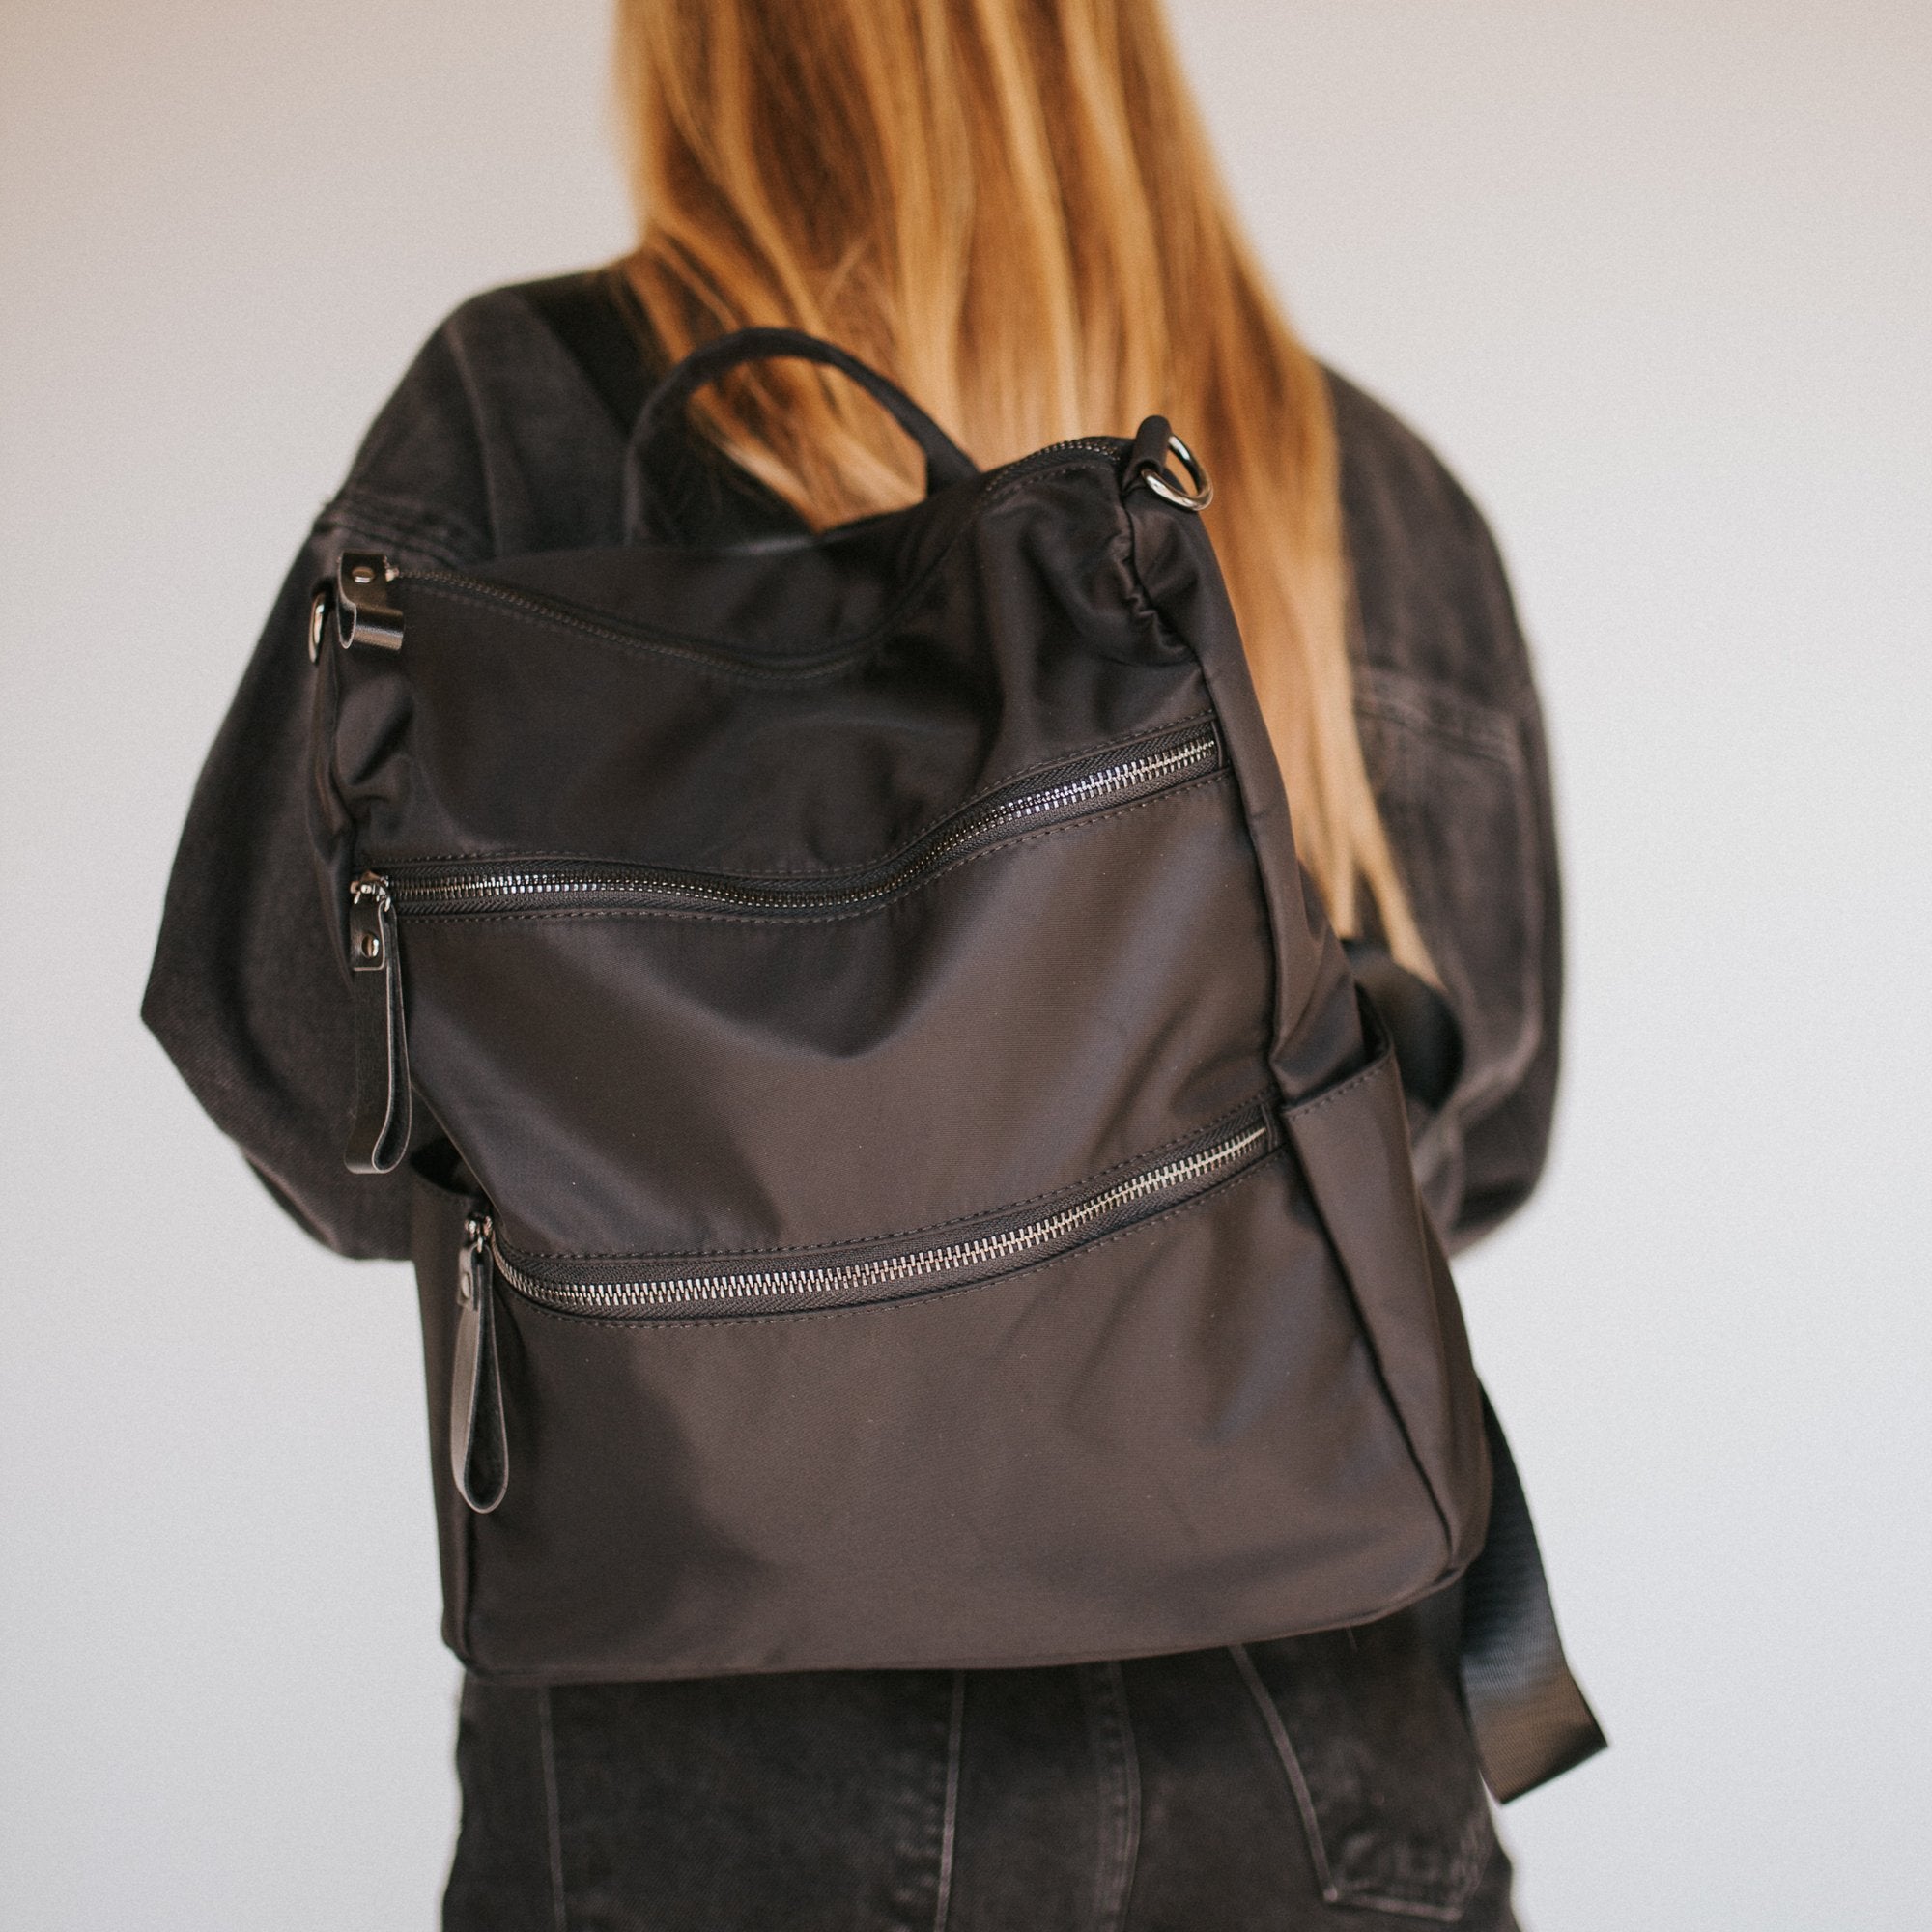 Nori Black Backpack